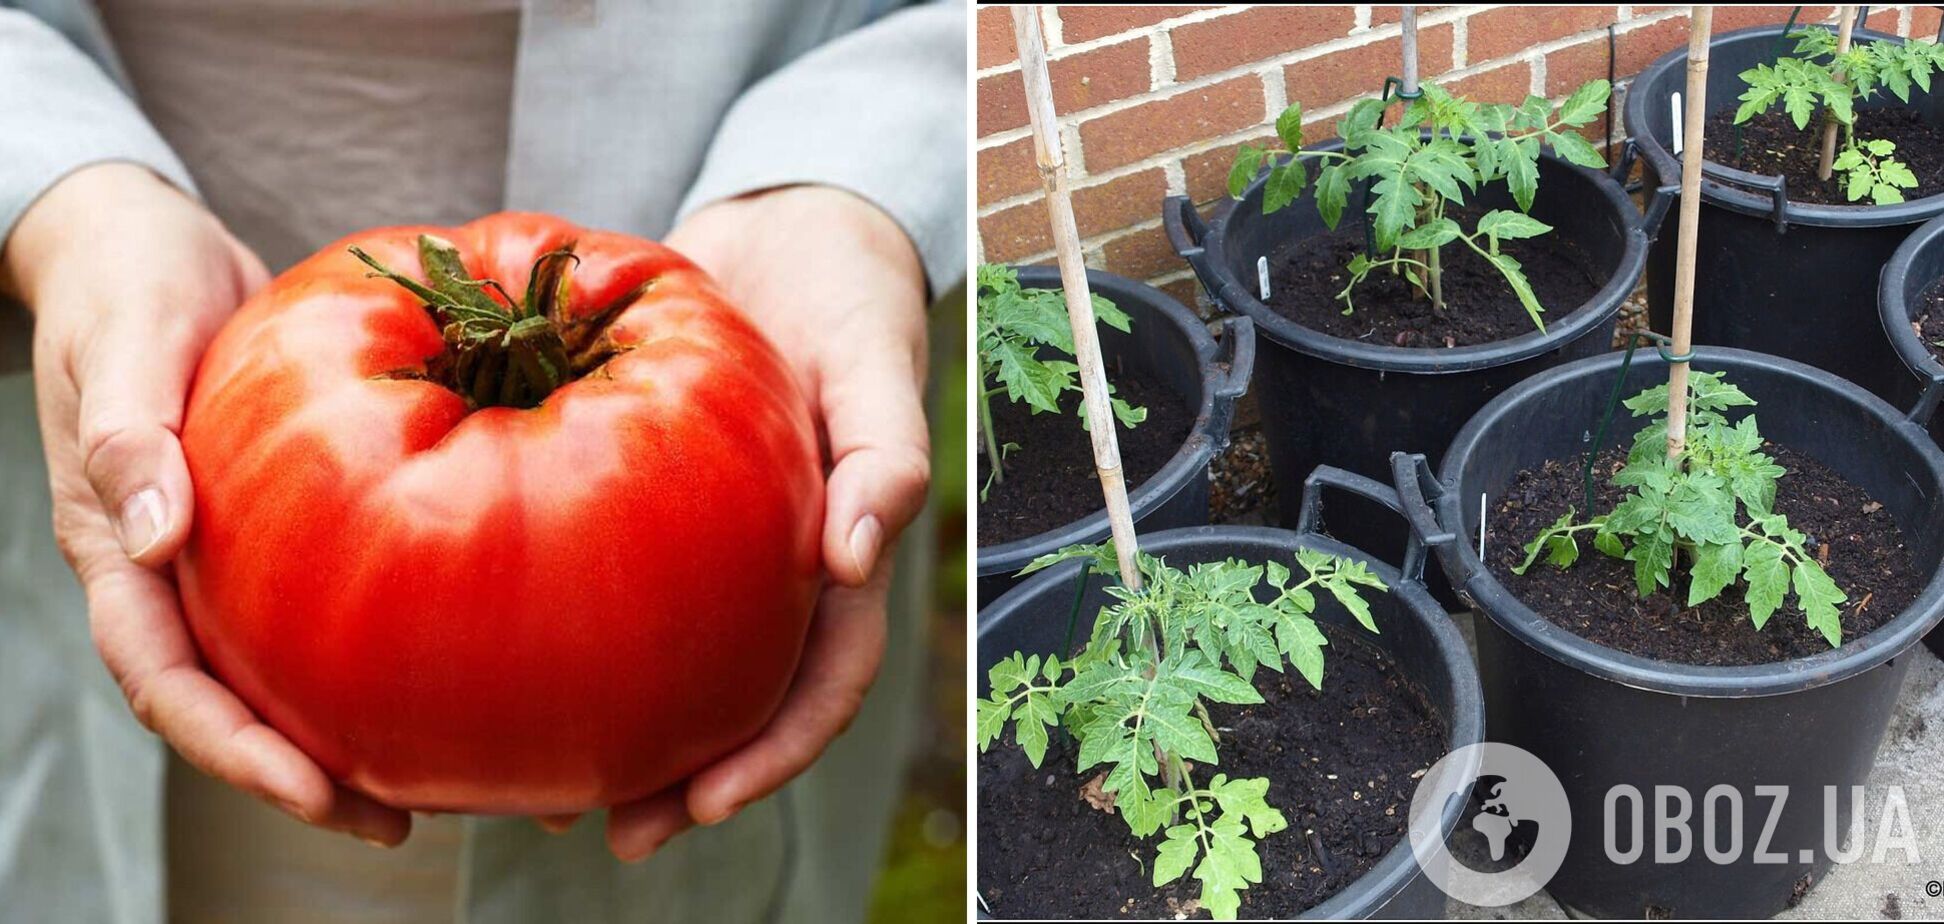 Названы идеальные сорта помидоров: растут размером с кулак без труда